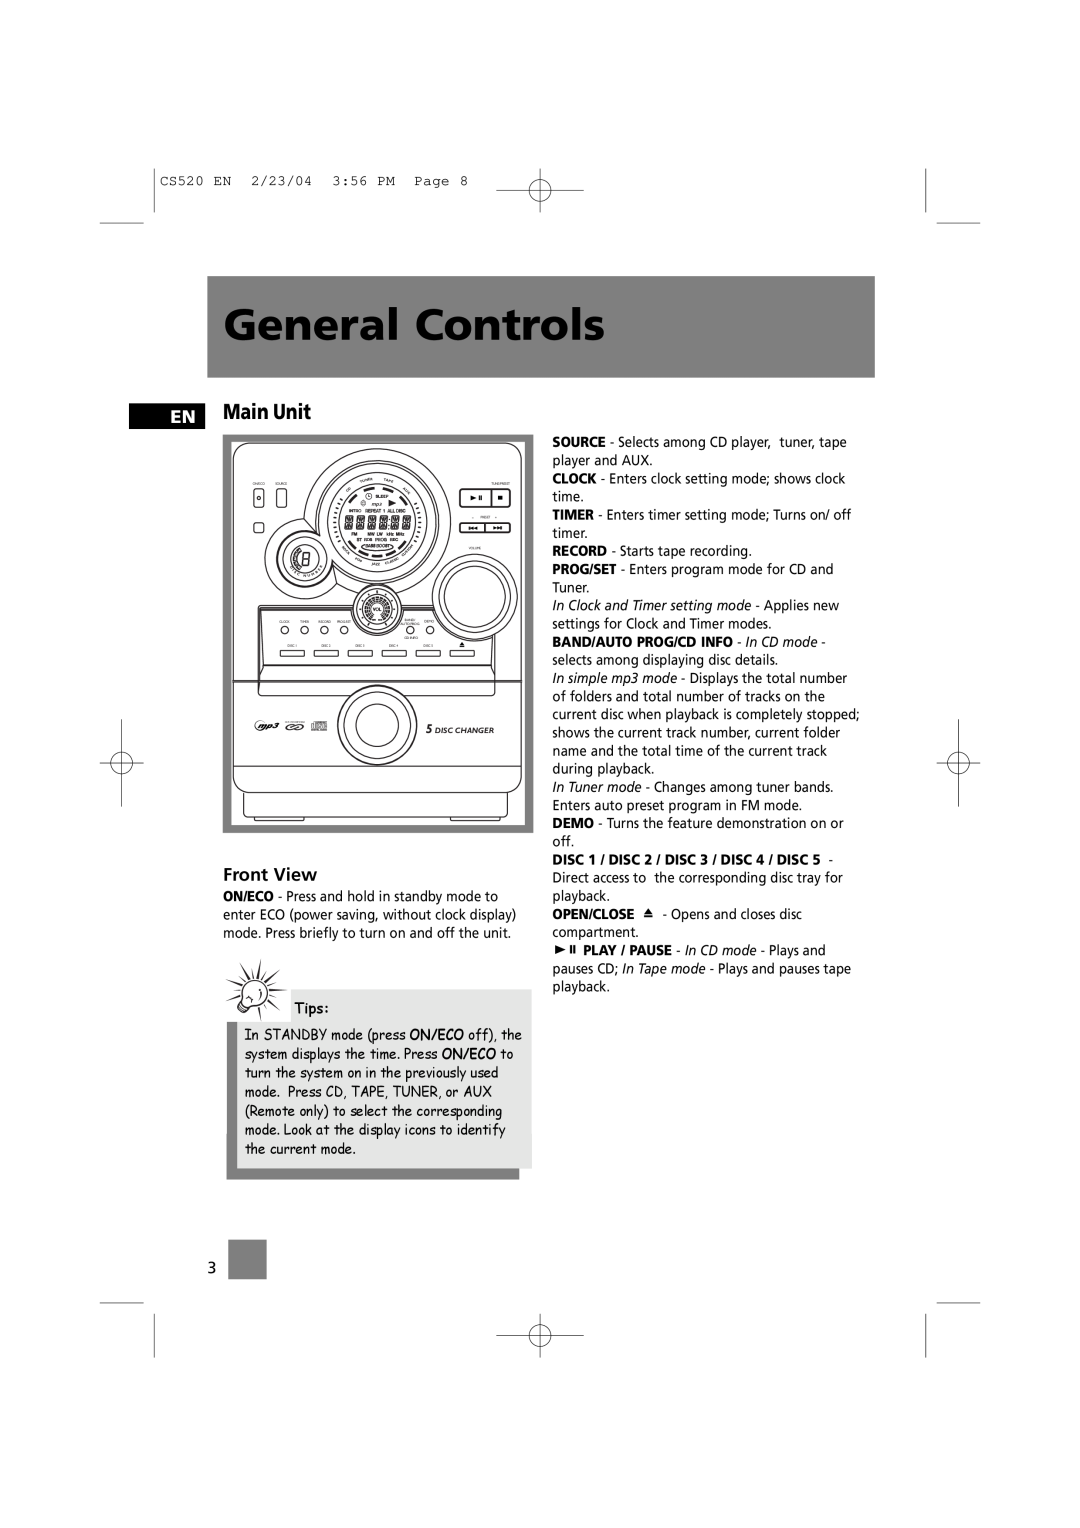 Technicolor - Thomson CS520 manual General Controls, EN Main Unit, Tips 